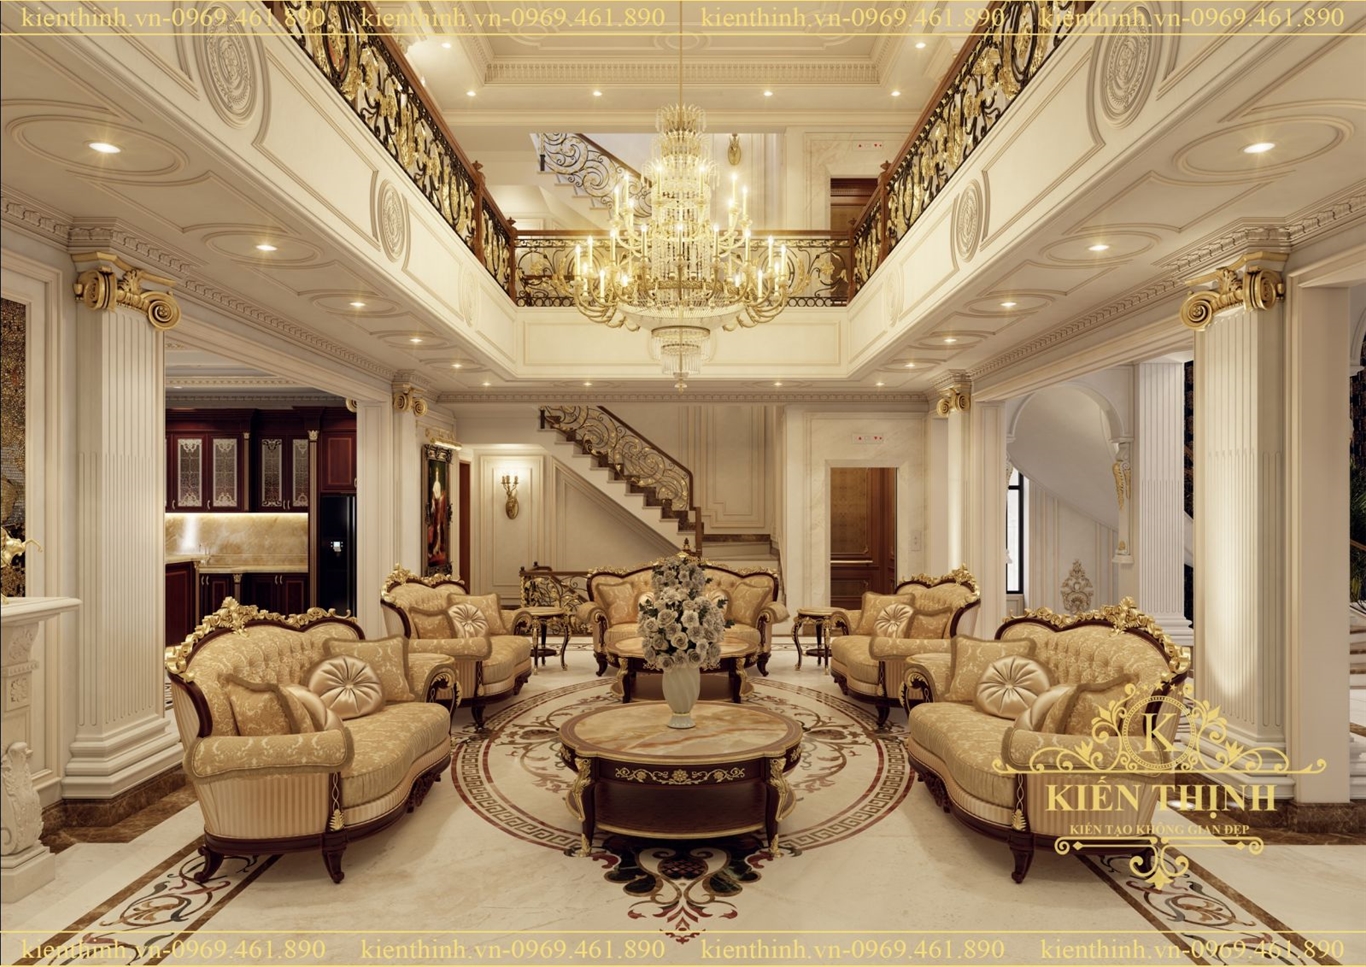 mẫu thiết kế nội thất phòng khách tân cổ điển cao cấp luxury interior livingroom design